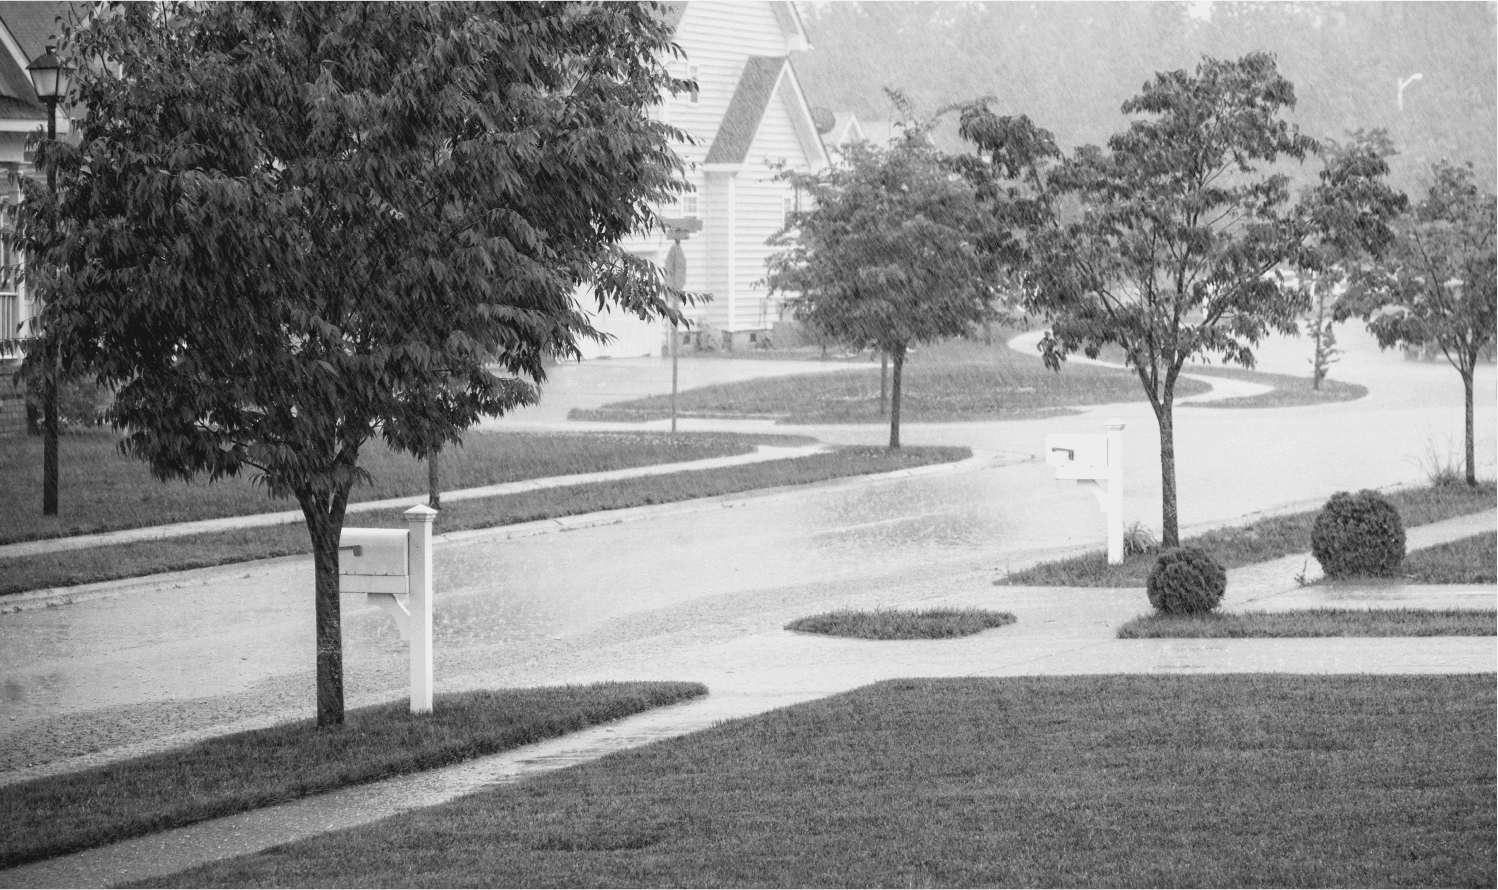 A rainy street in a suburban neighborhood.